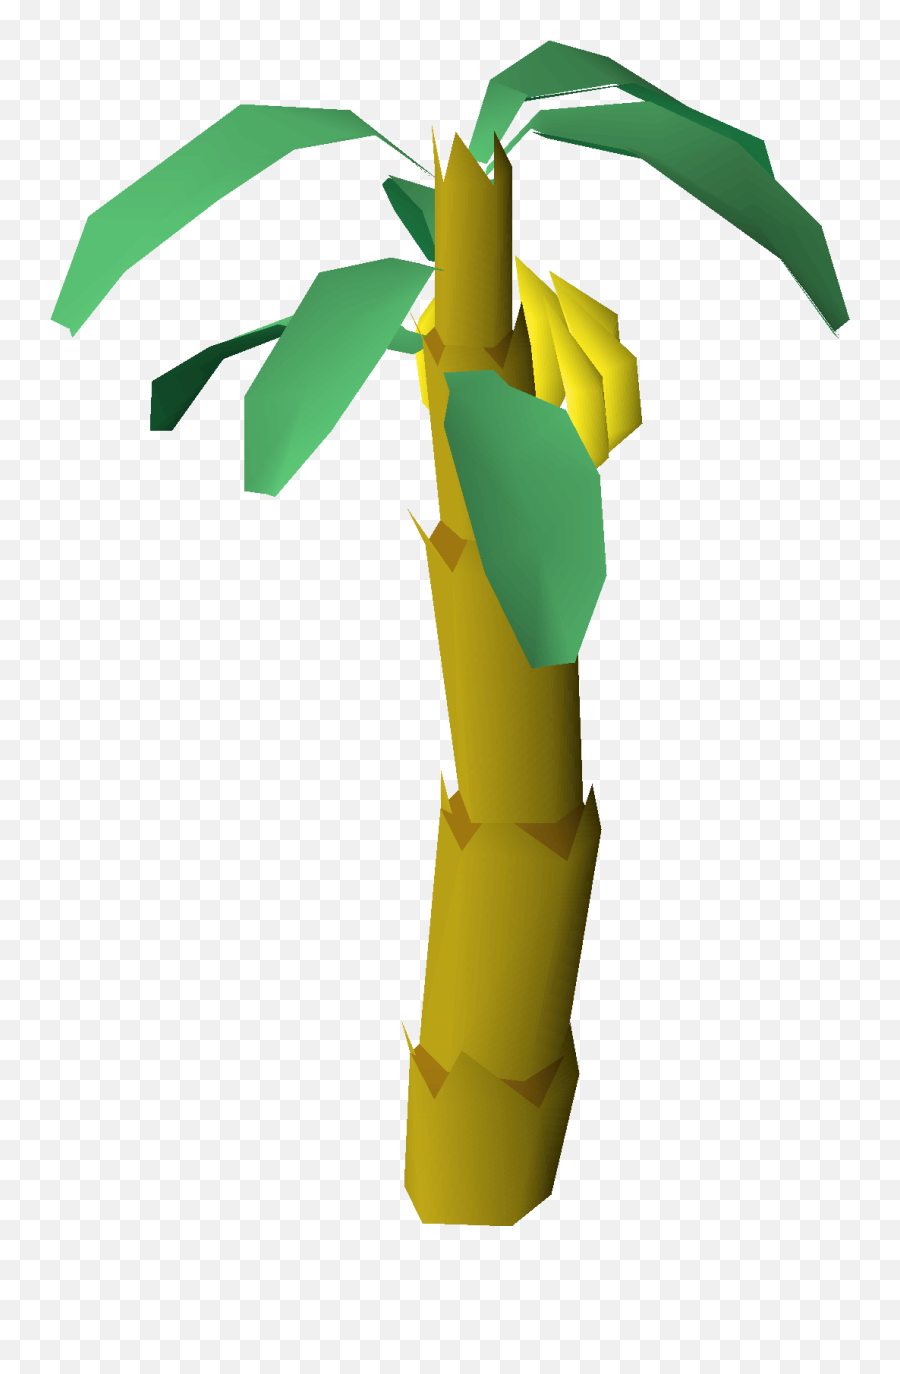 Banana Tree - Banana Osrs Png,Banana Tree Png